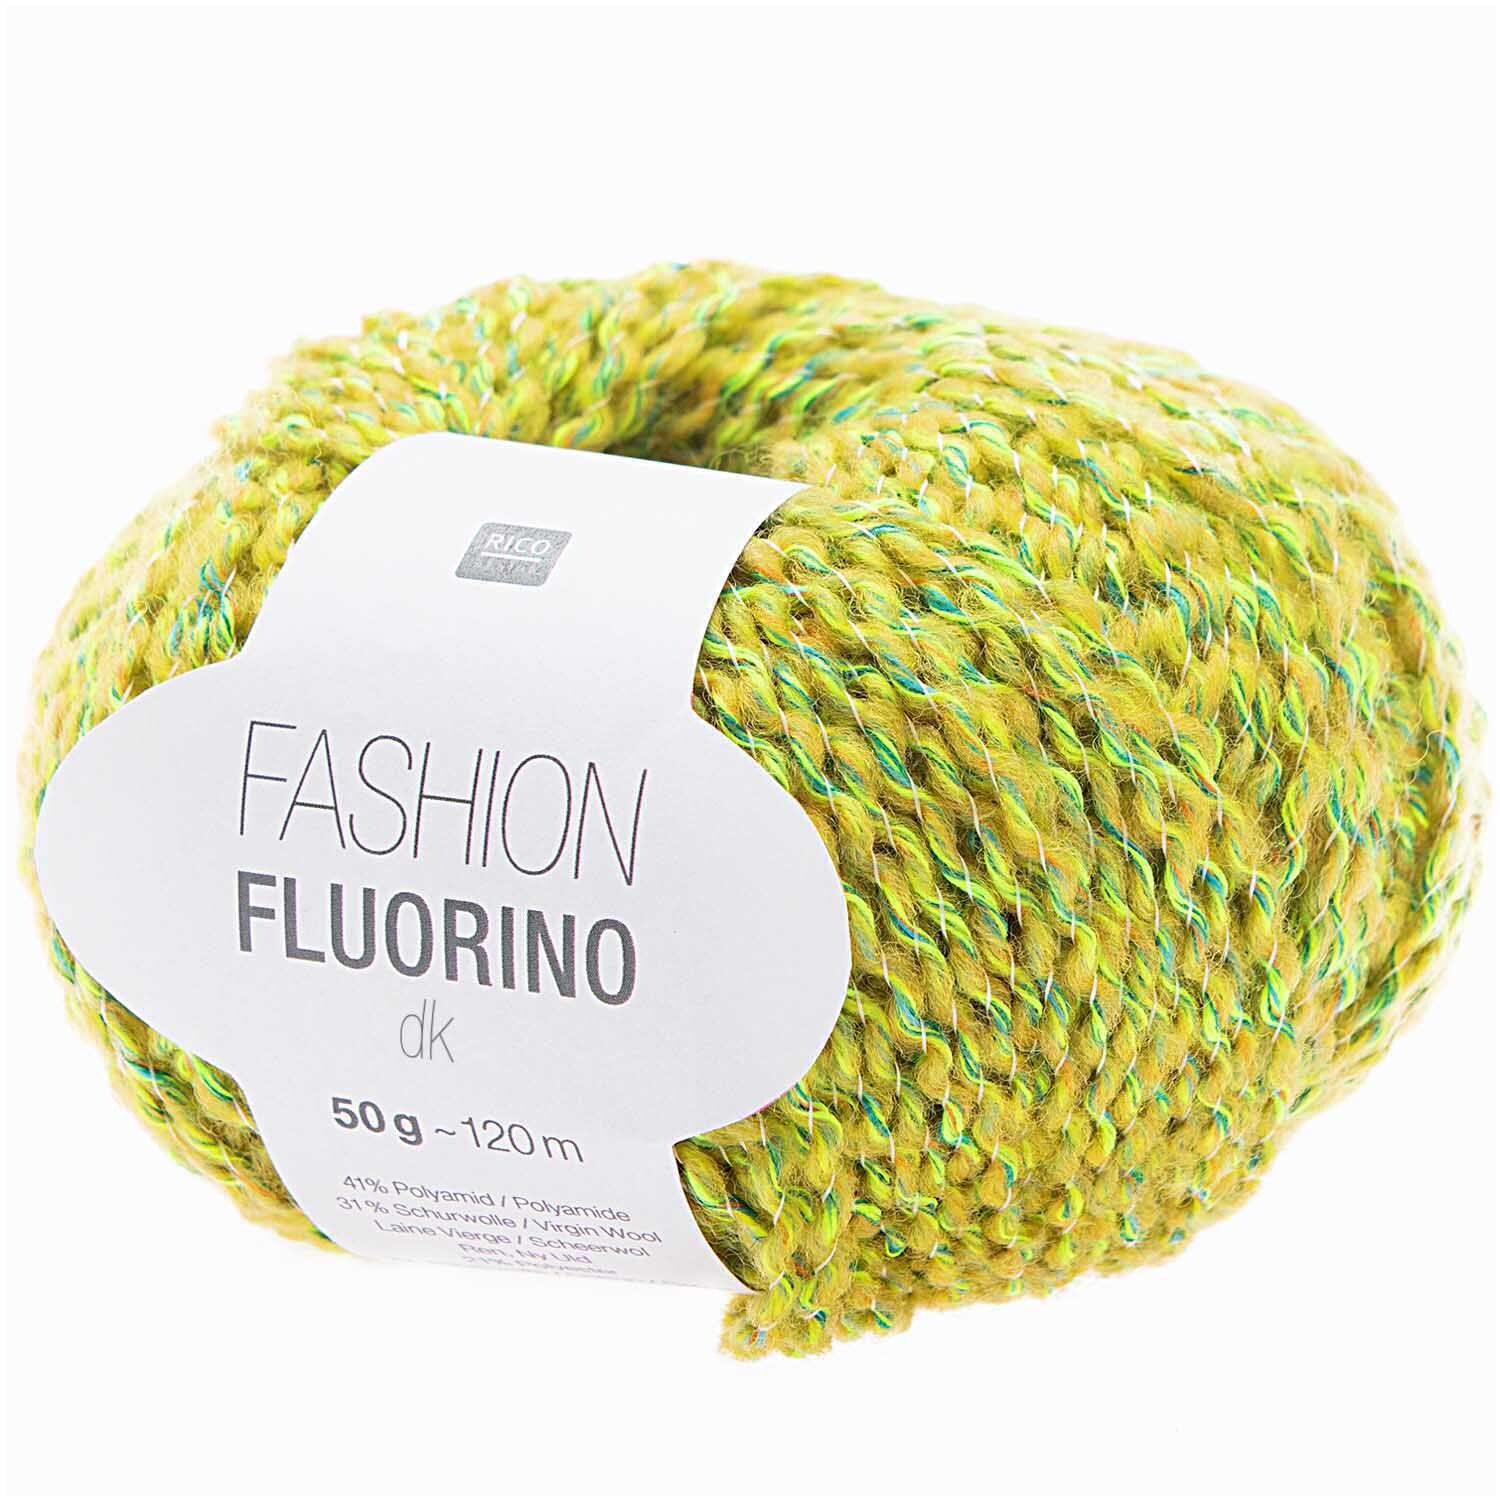 Fashion Fluorino dk